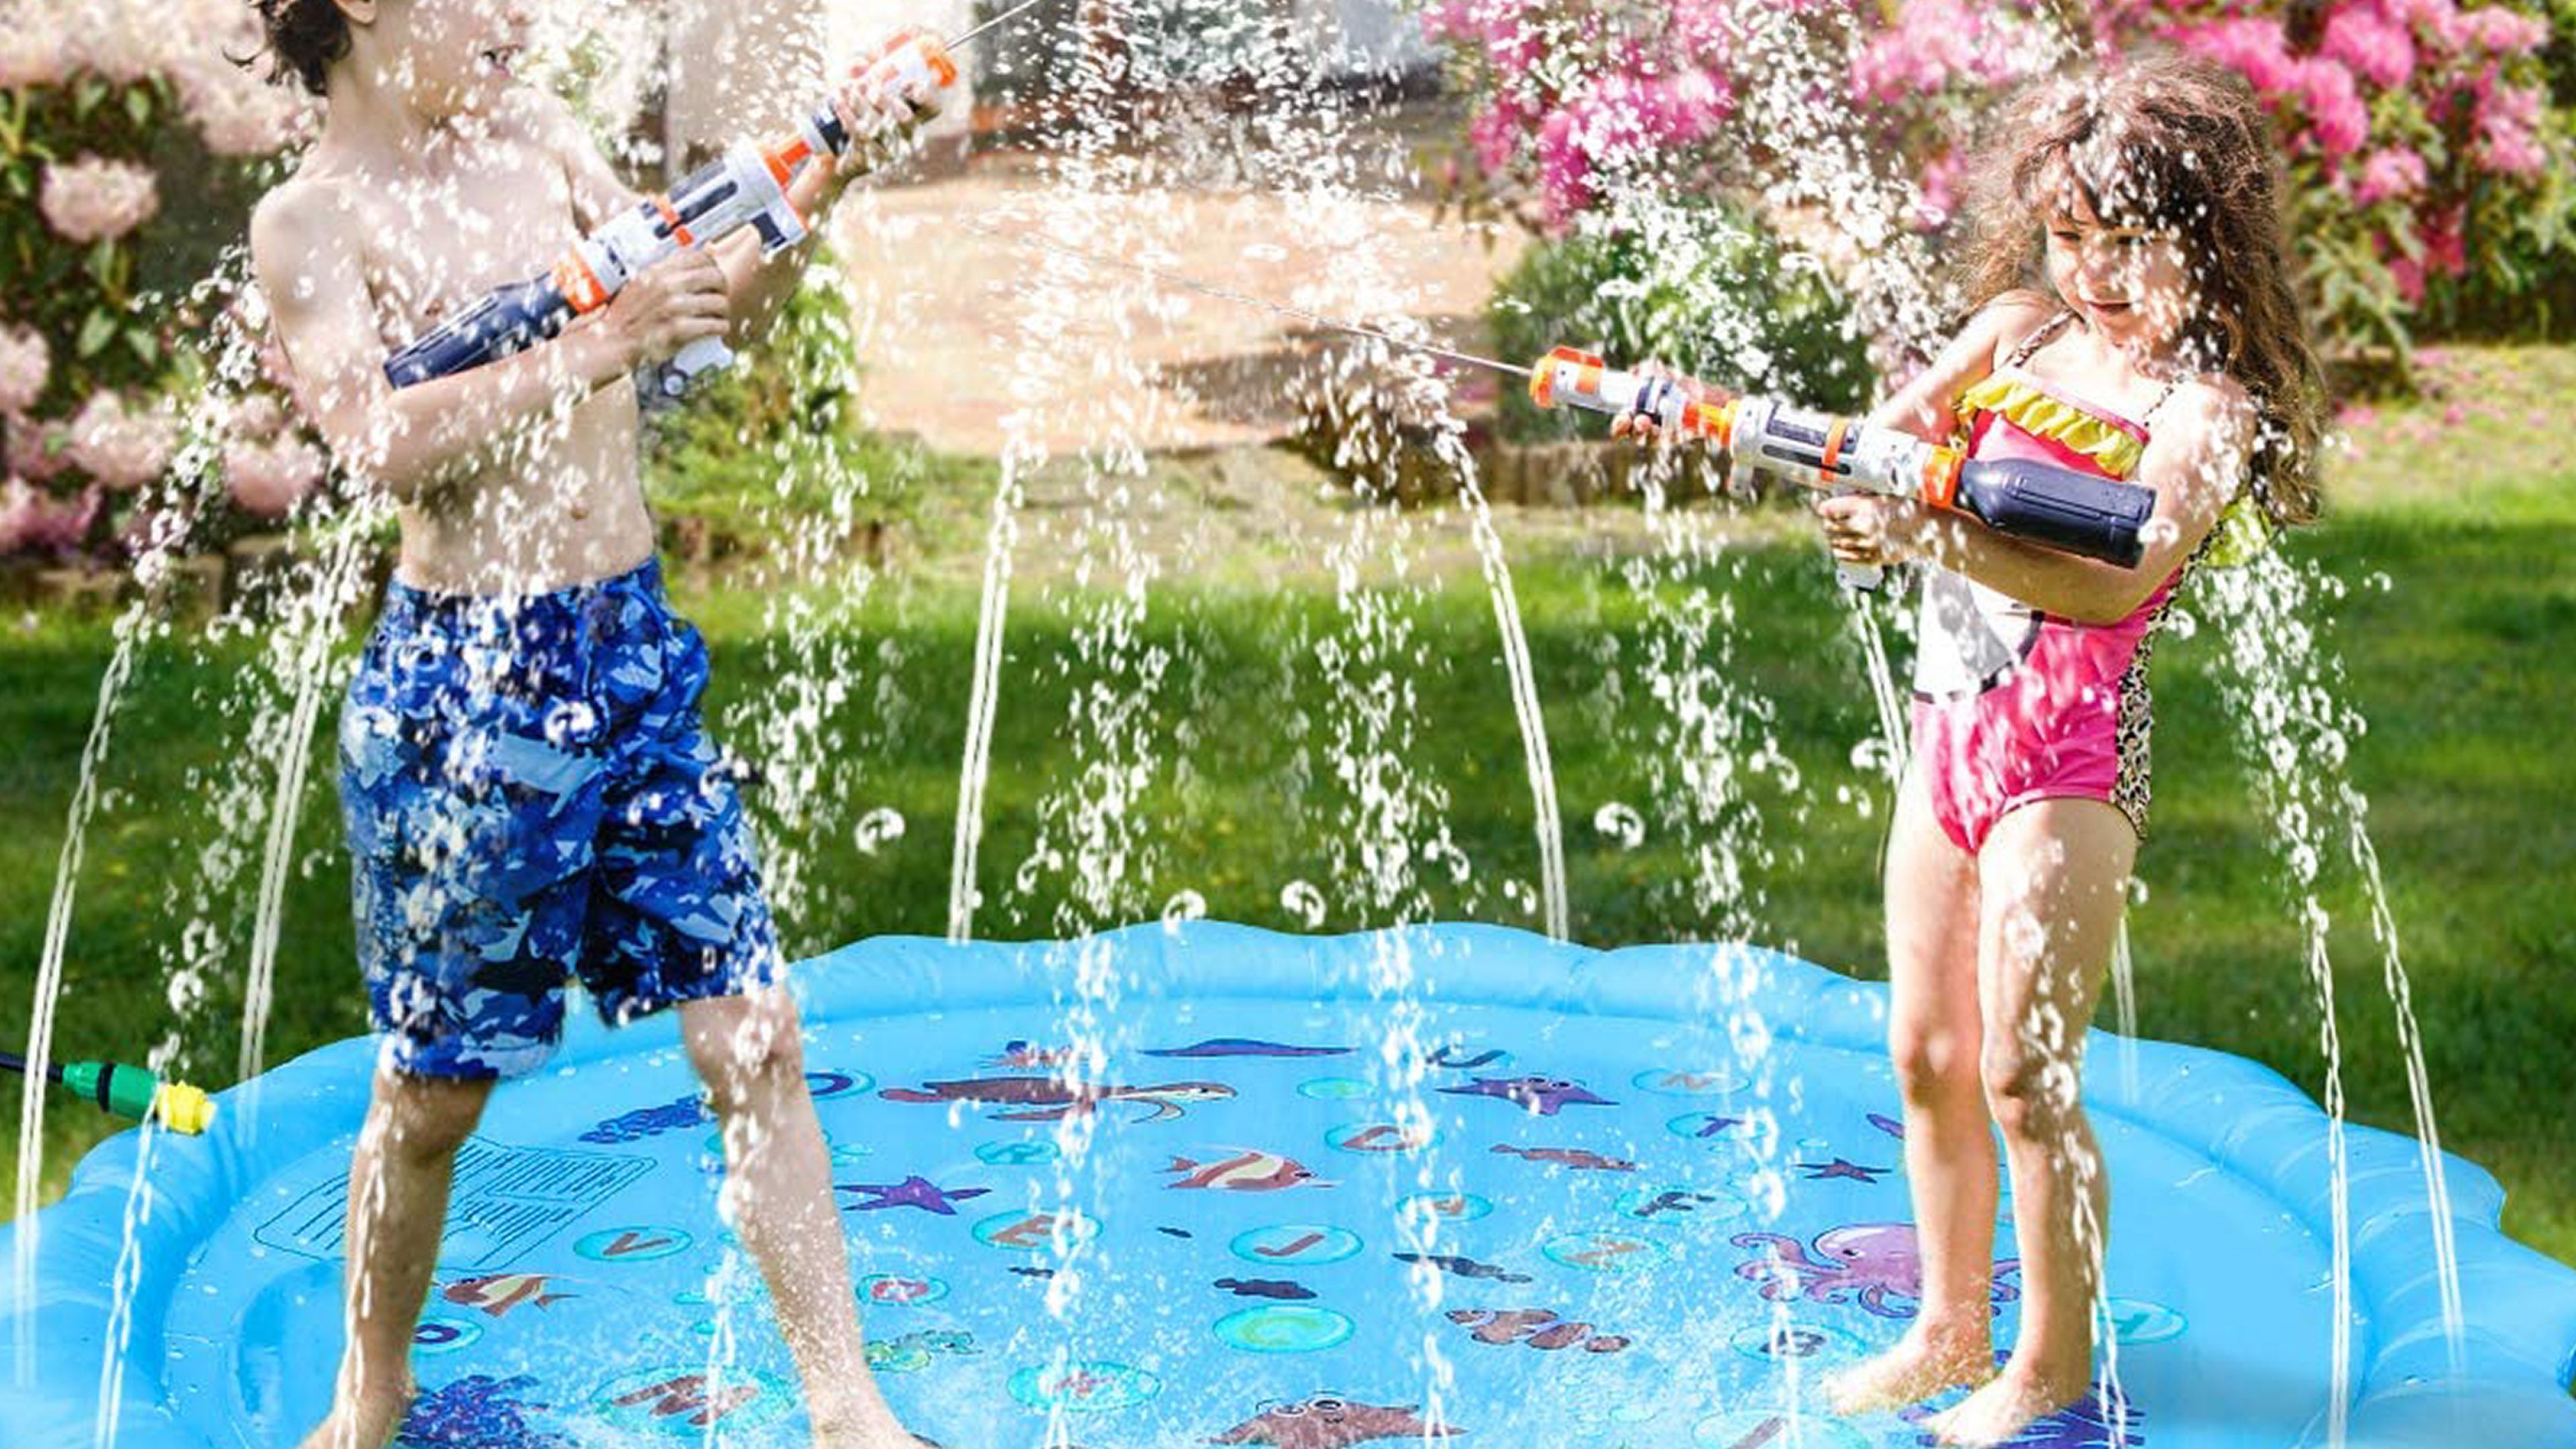 Juguetes de agua para que los niños se en la piscina | Business Insider España